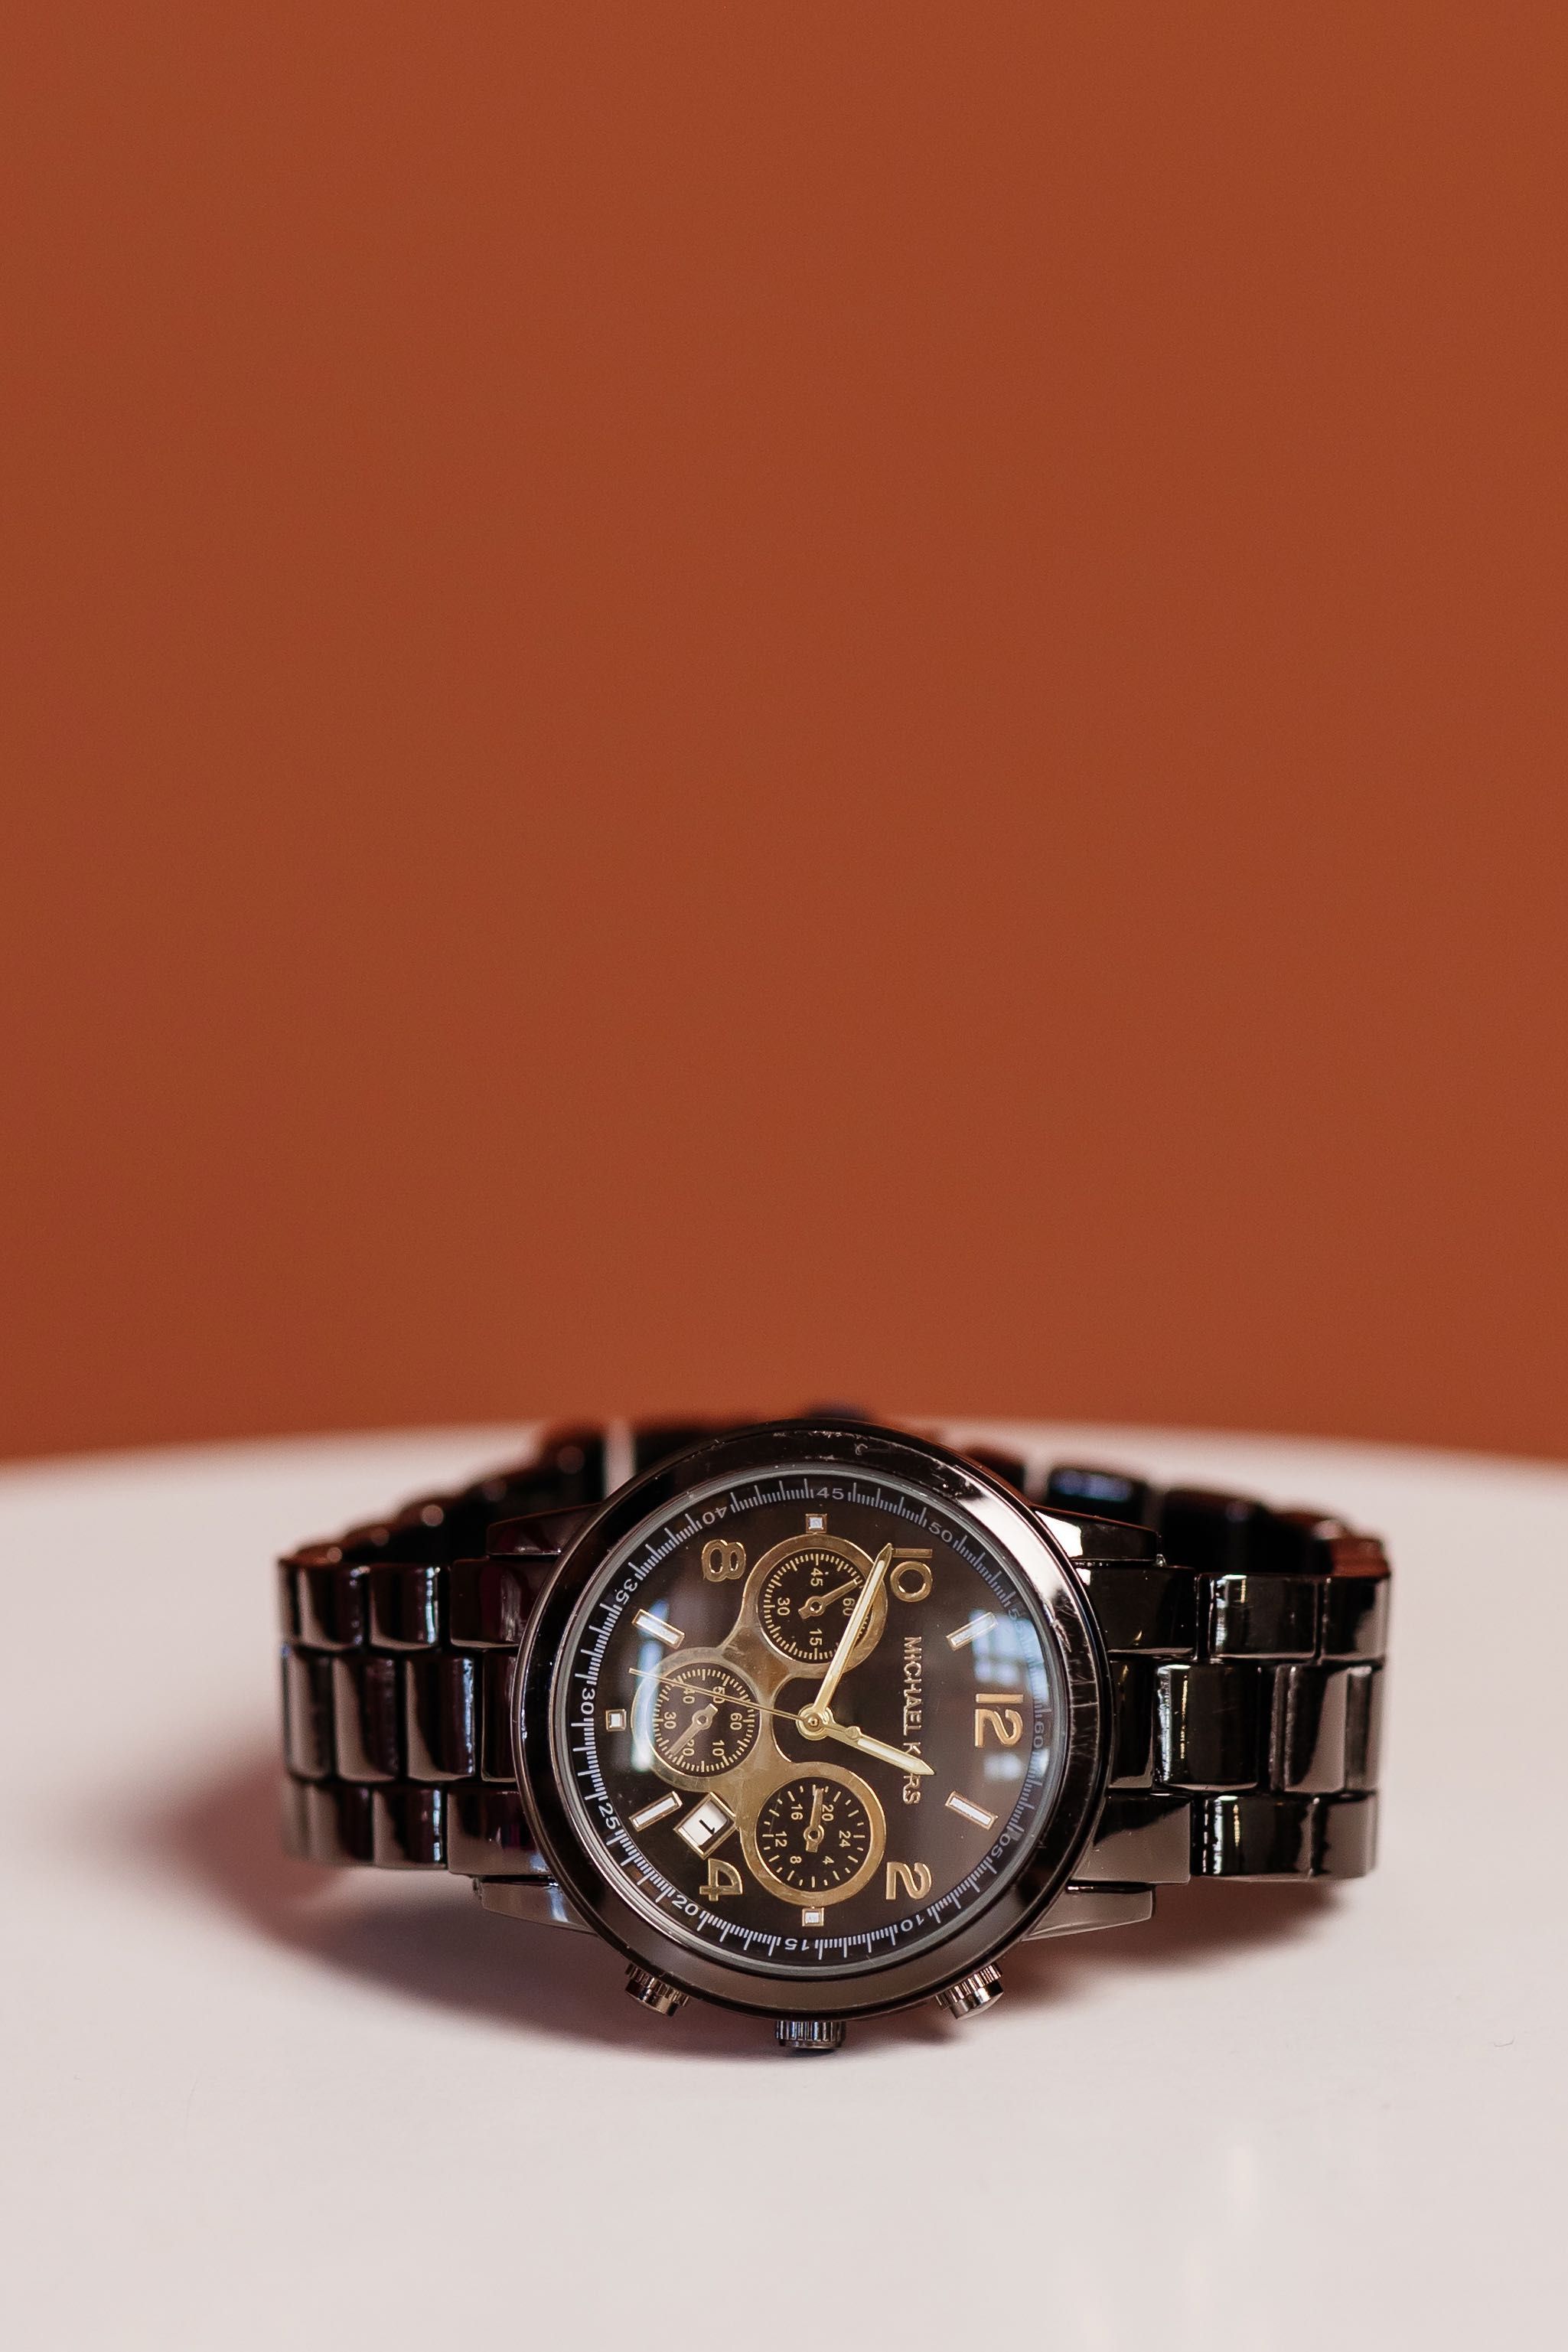 ЗНИЖКА! Чоловічий годинник Michael Kors | часы | гарантія